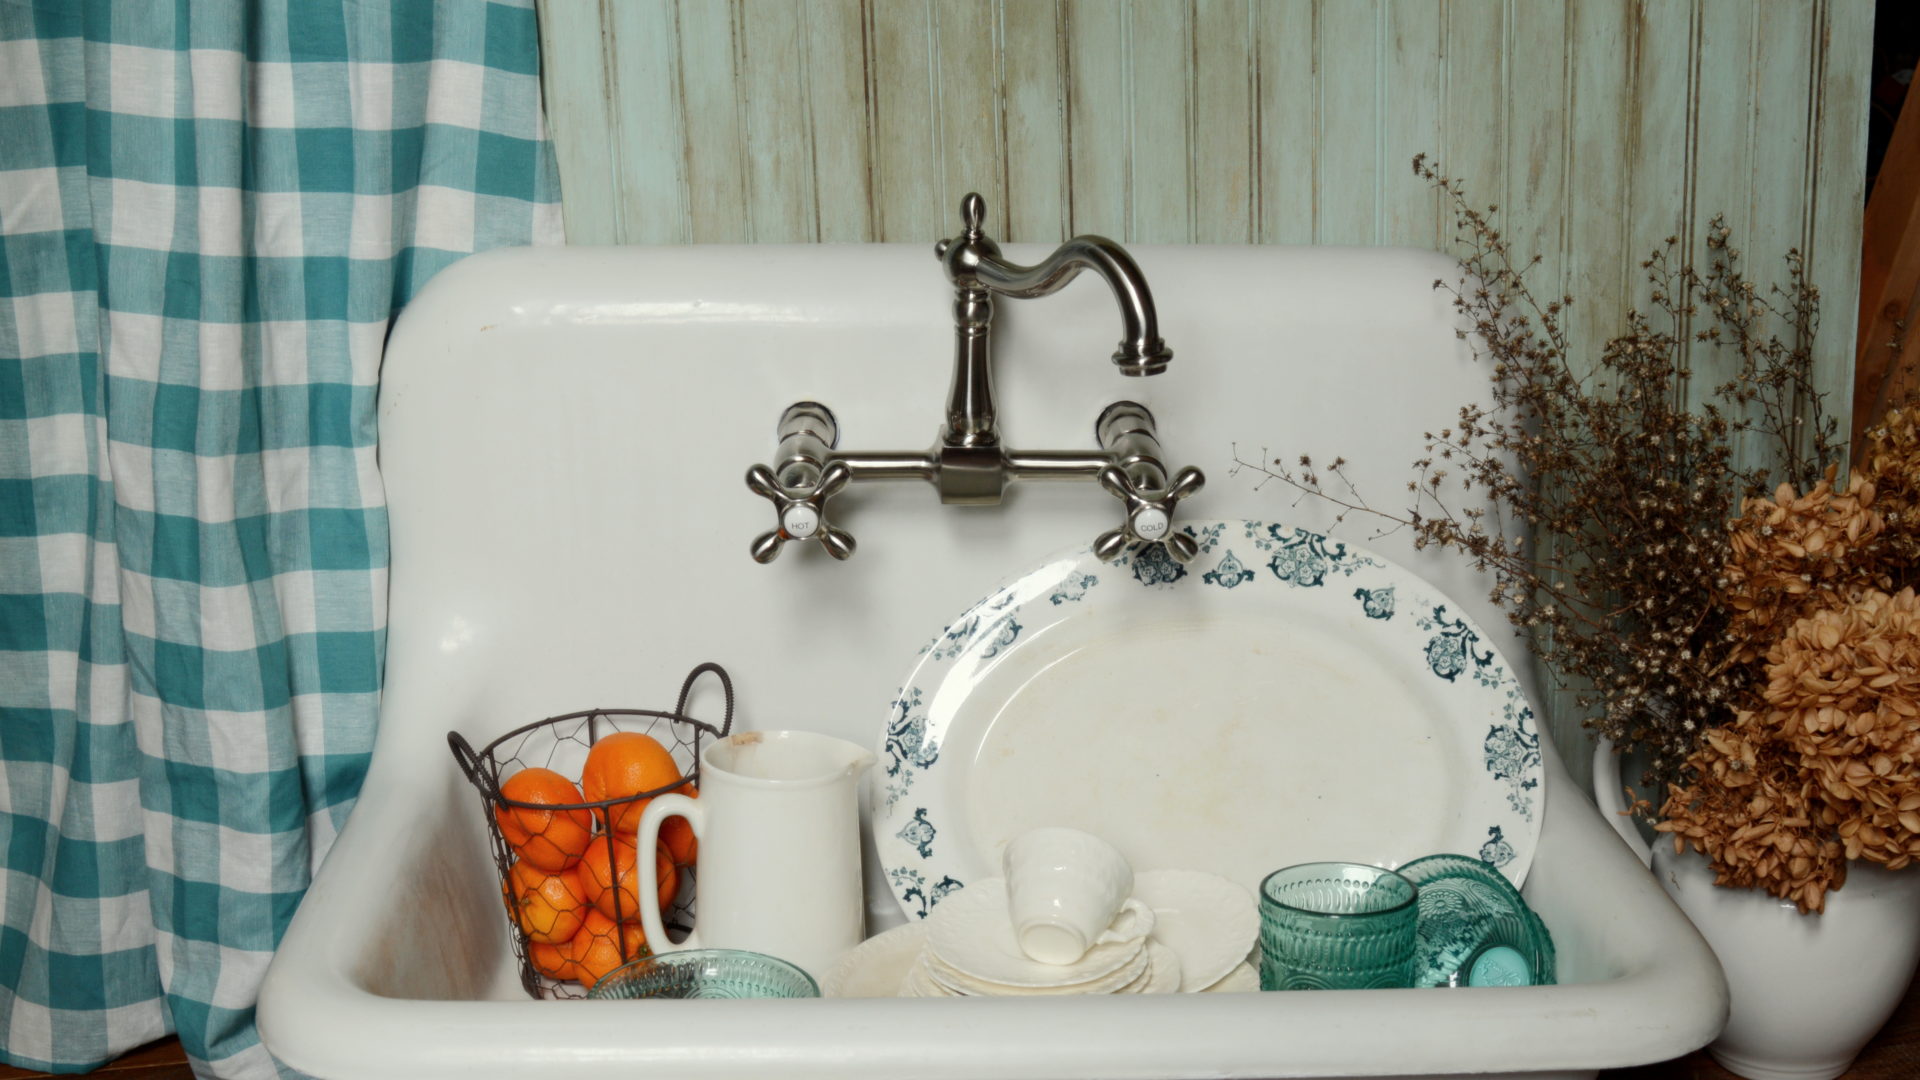 restore an old fashioned kitchen sink